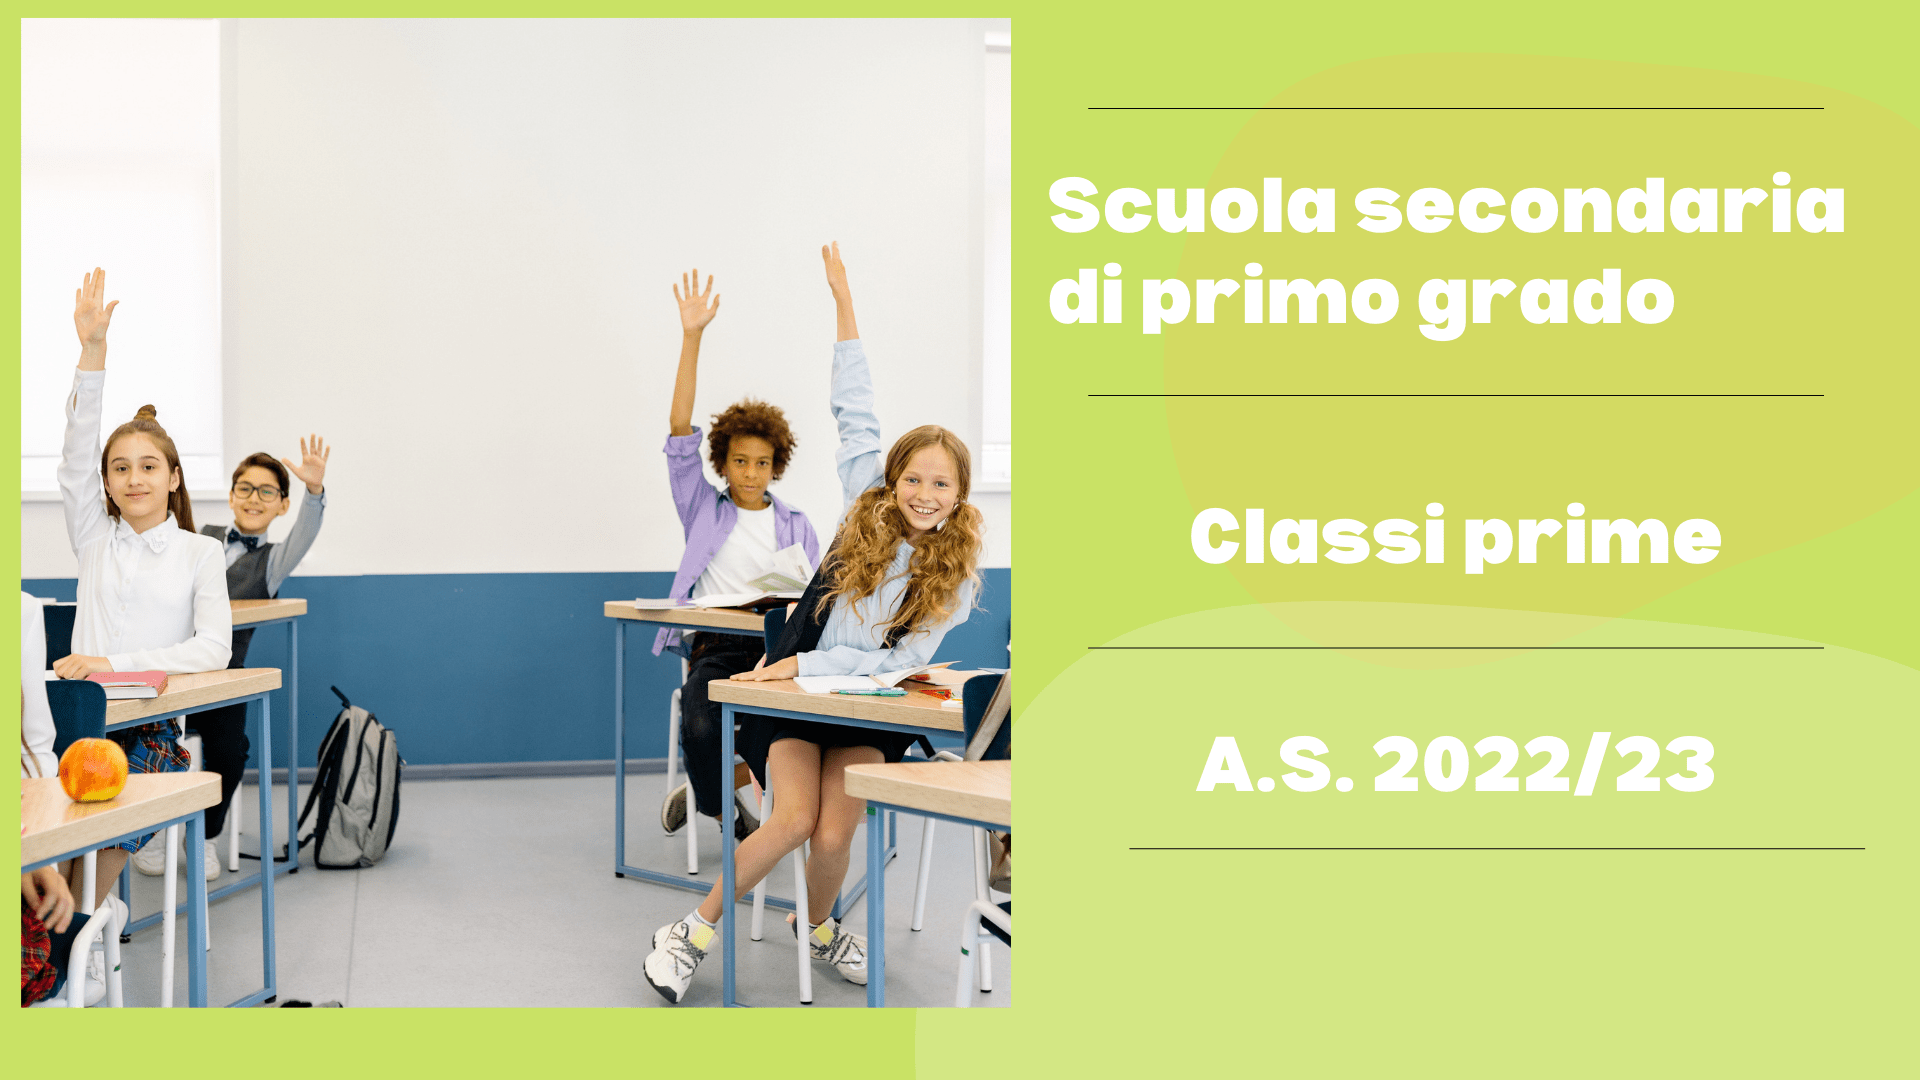 Scuola secondaria di primo grado – Elenchi classi prime